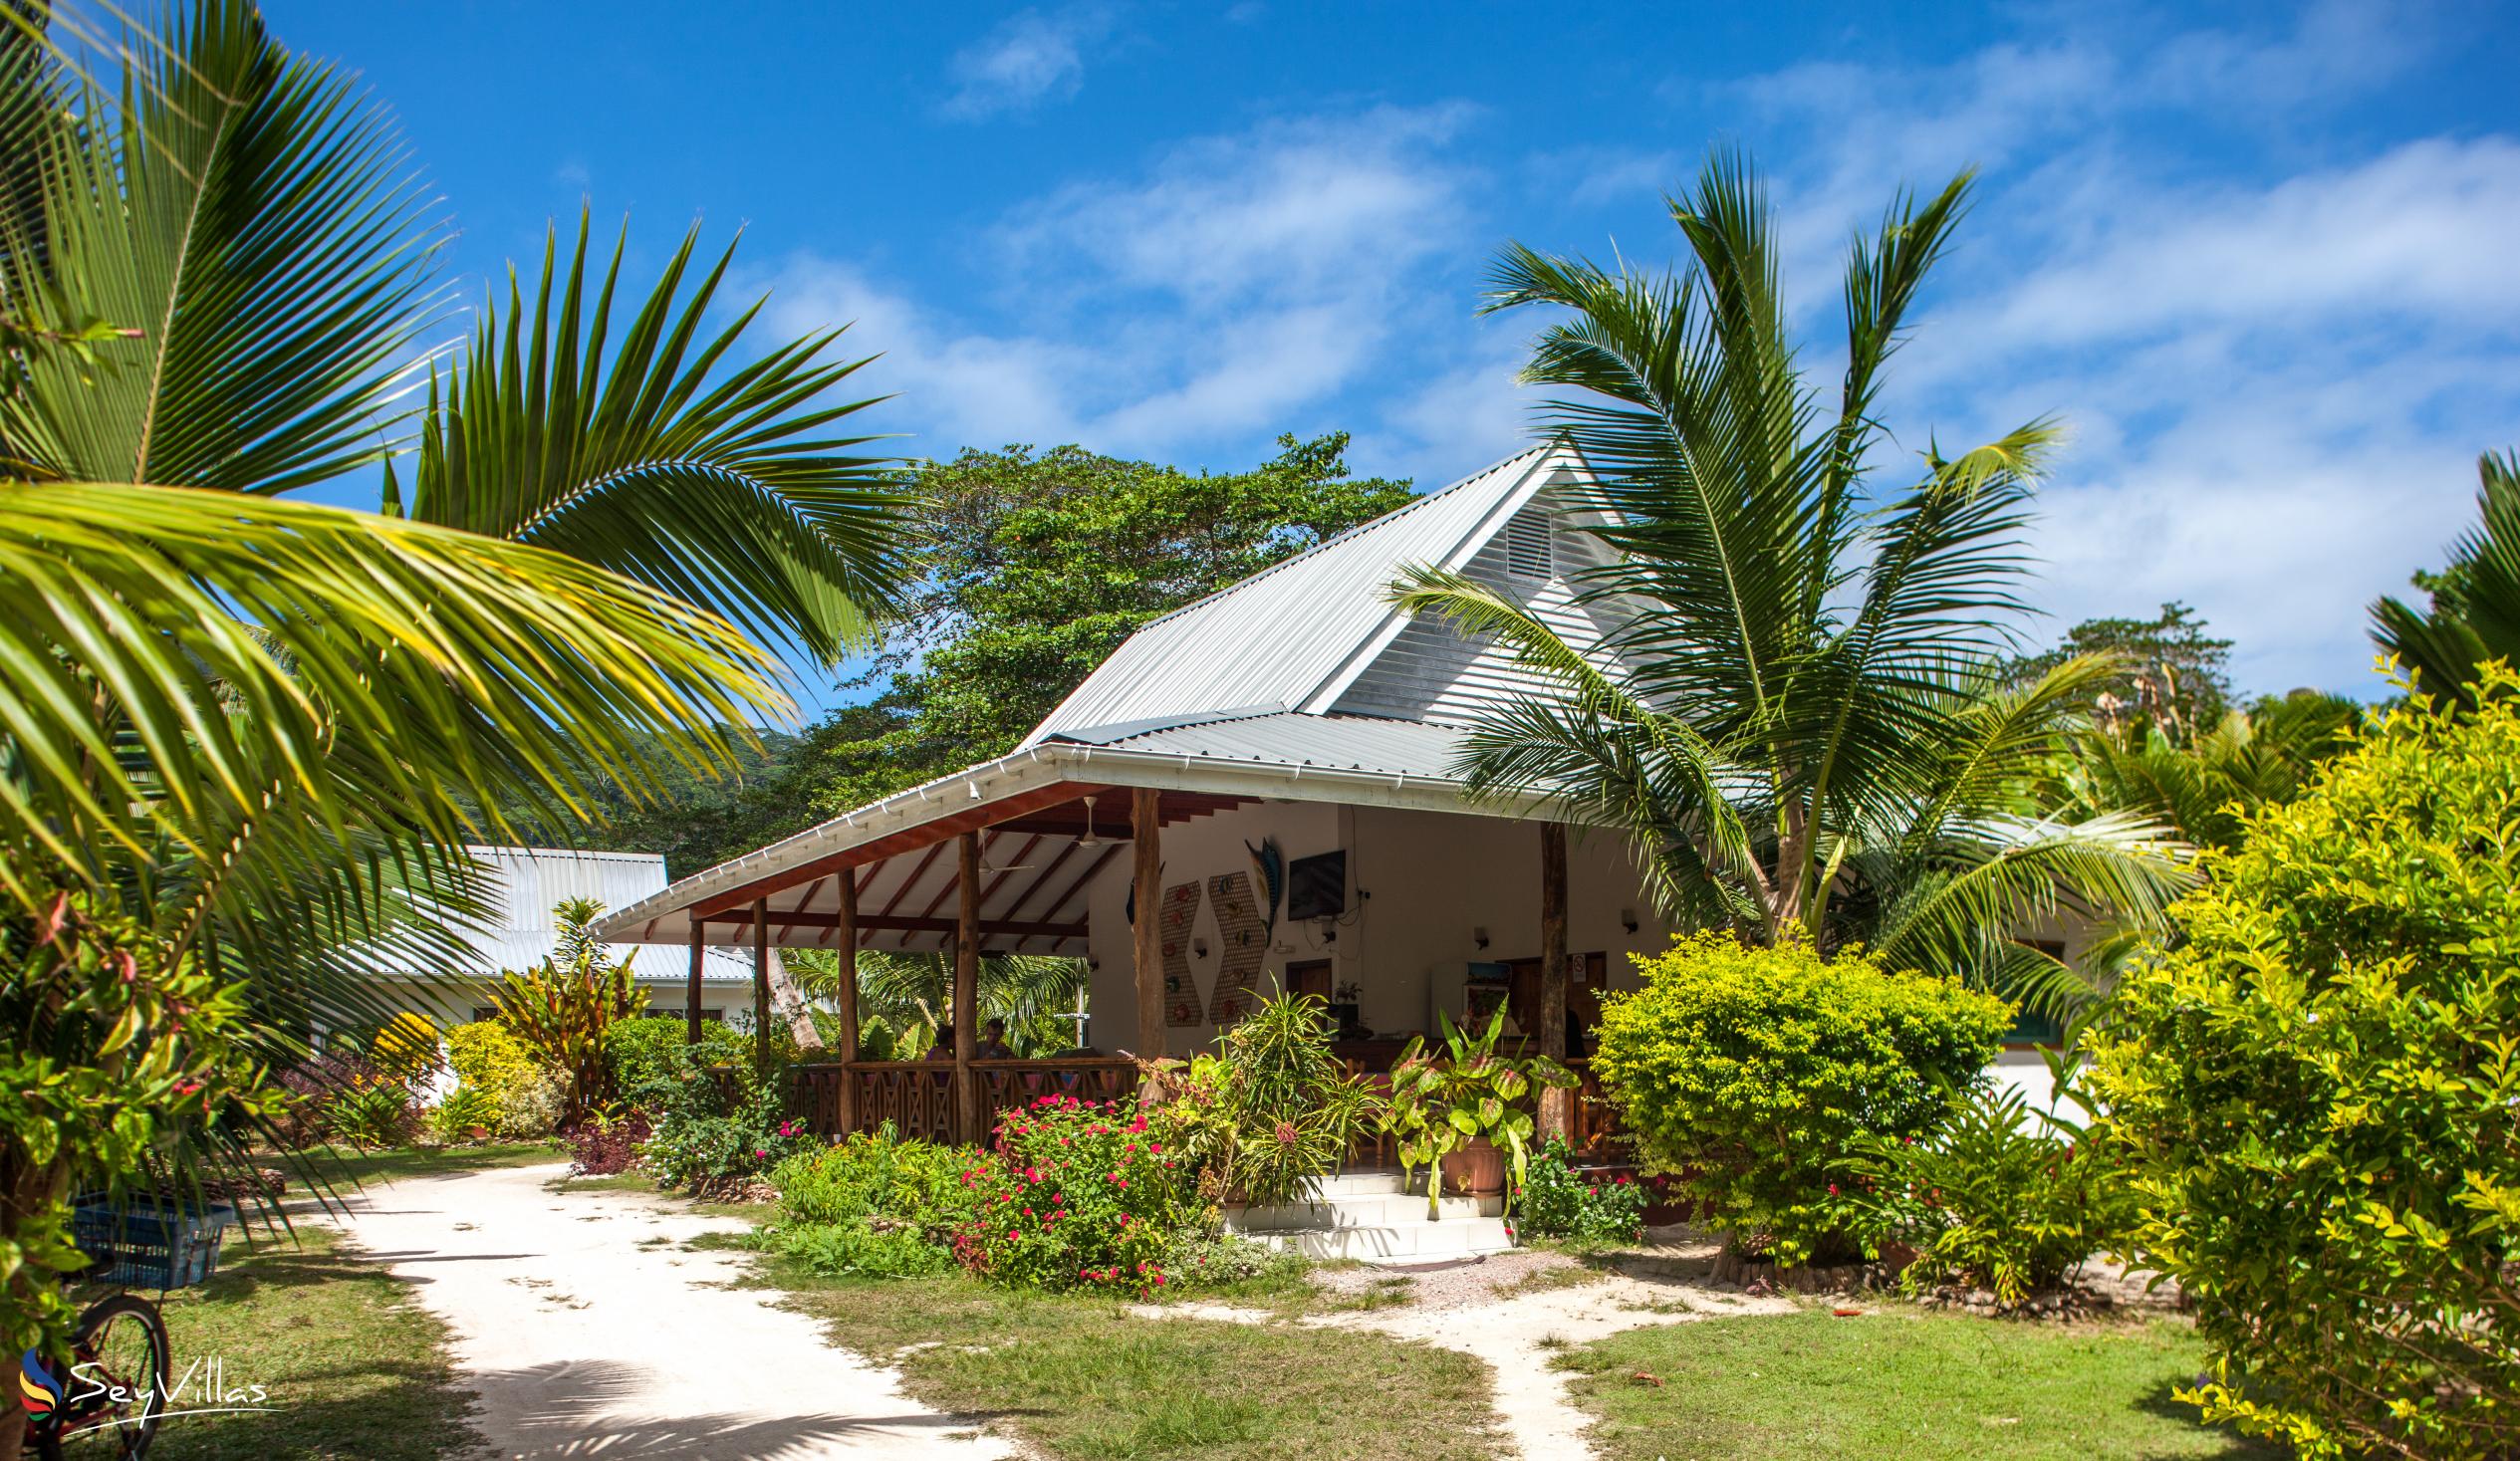 Foto 9: Villa Veuve - Aussenbereich - La Digue (Seychellen)